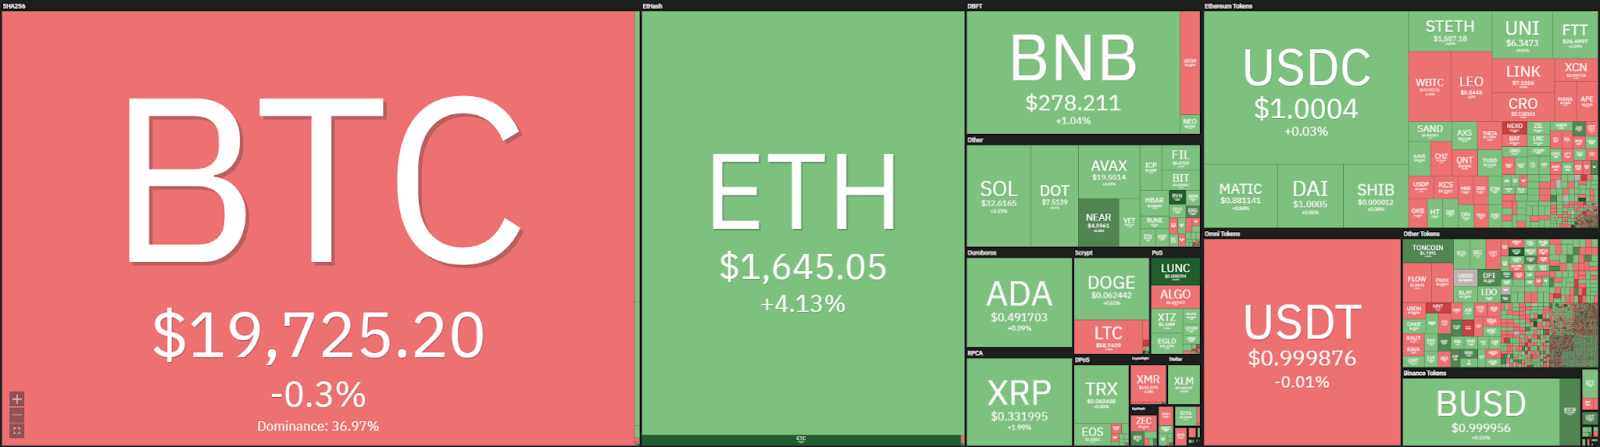 Análisis de precios de Ethereum: ETH rompe $ 1,650, ¿retroceso rápido entrante? 1